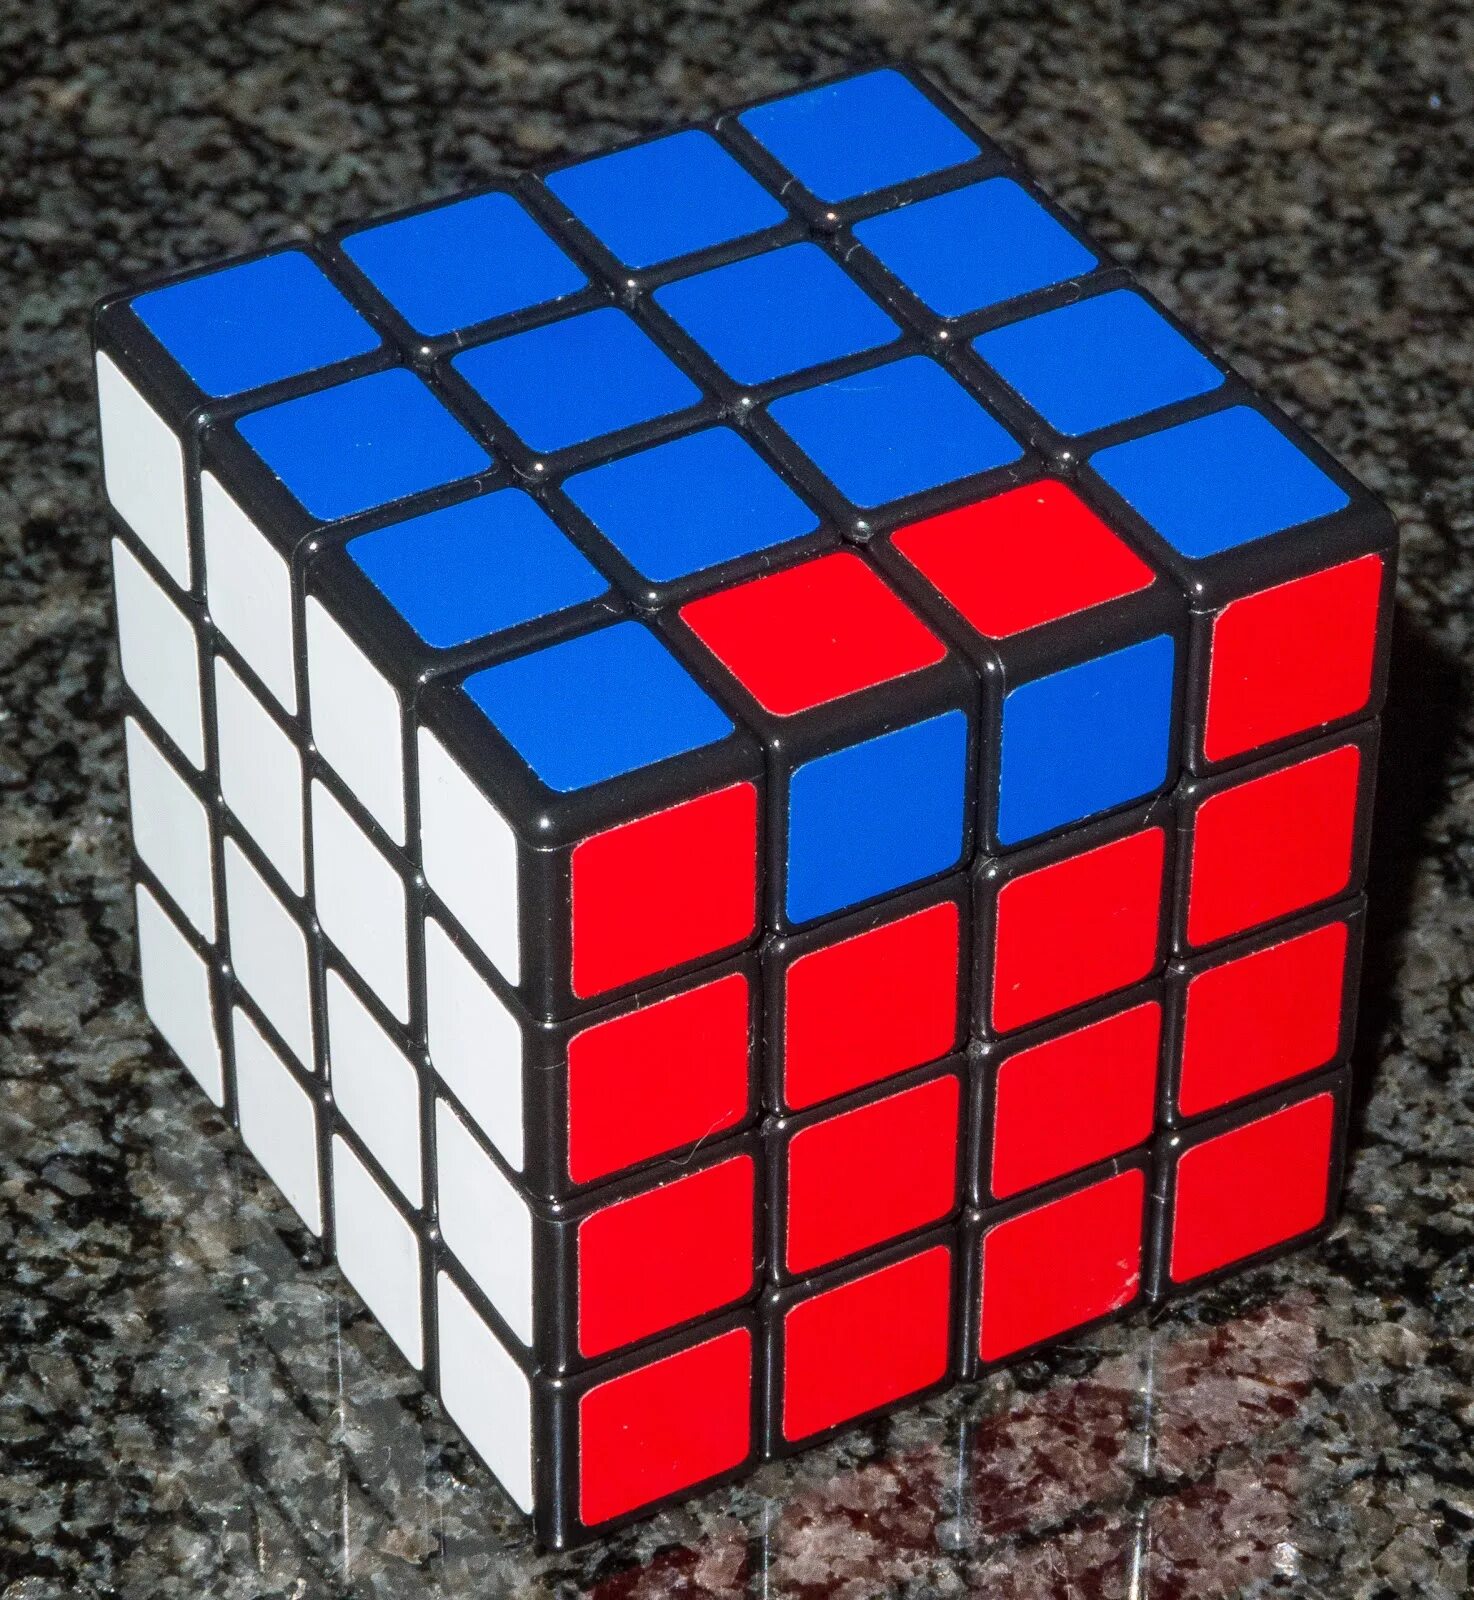 Рубик 4 4. Oll Паритет на кубике Рубика 4х4. Кубик Рубика 4х4 Паритет PLL. Флип кубик Рубика 4на4. Паритеты кубика Рубика 4x4.